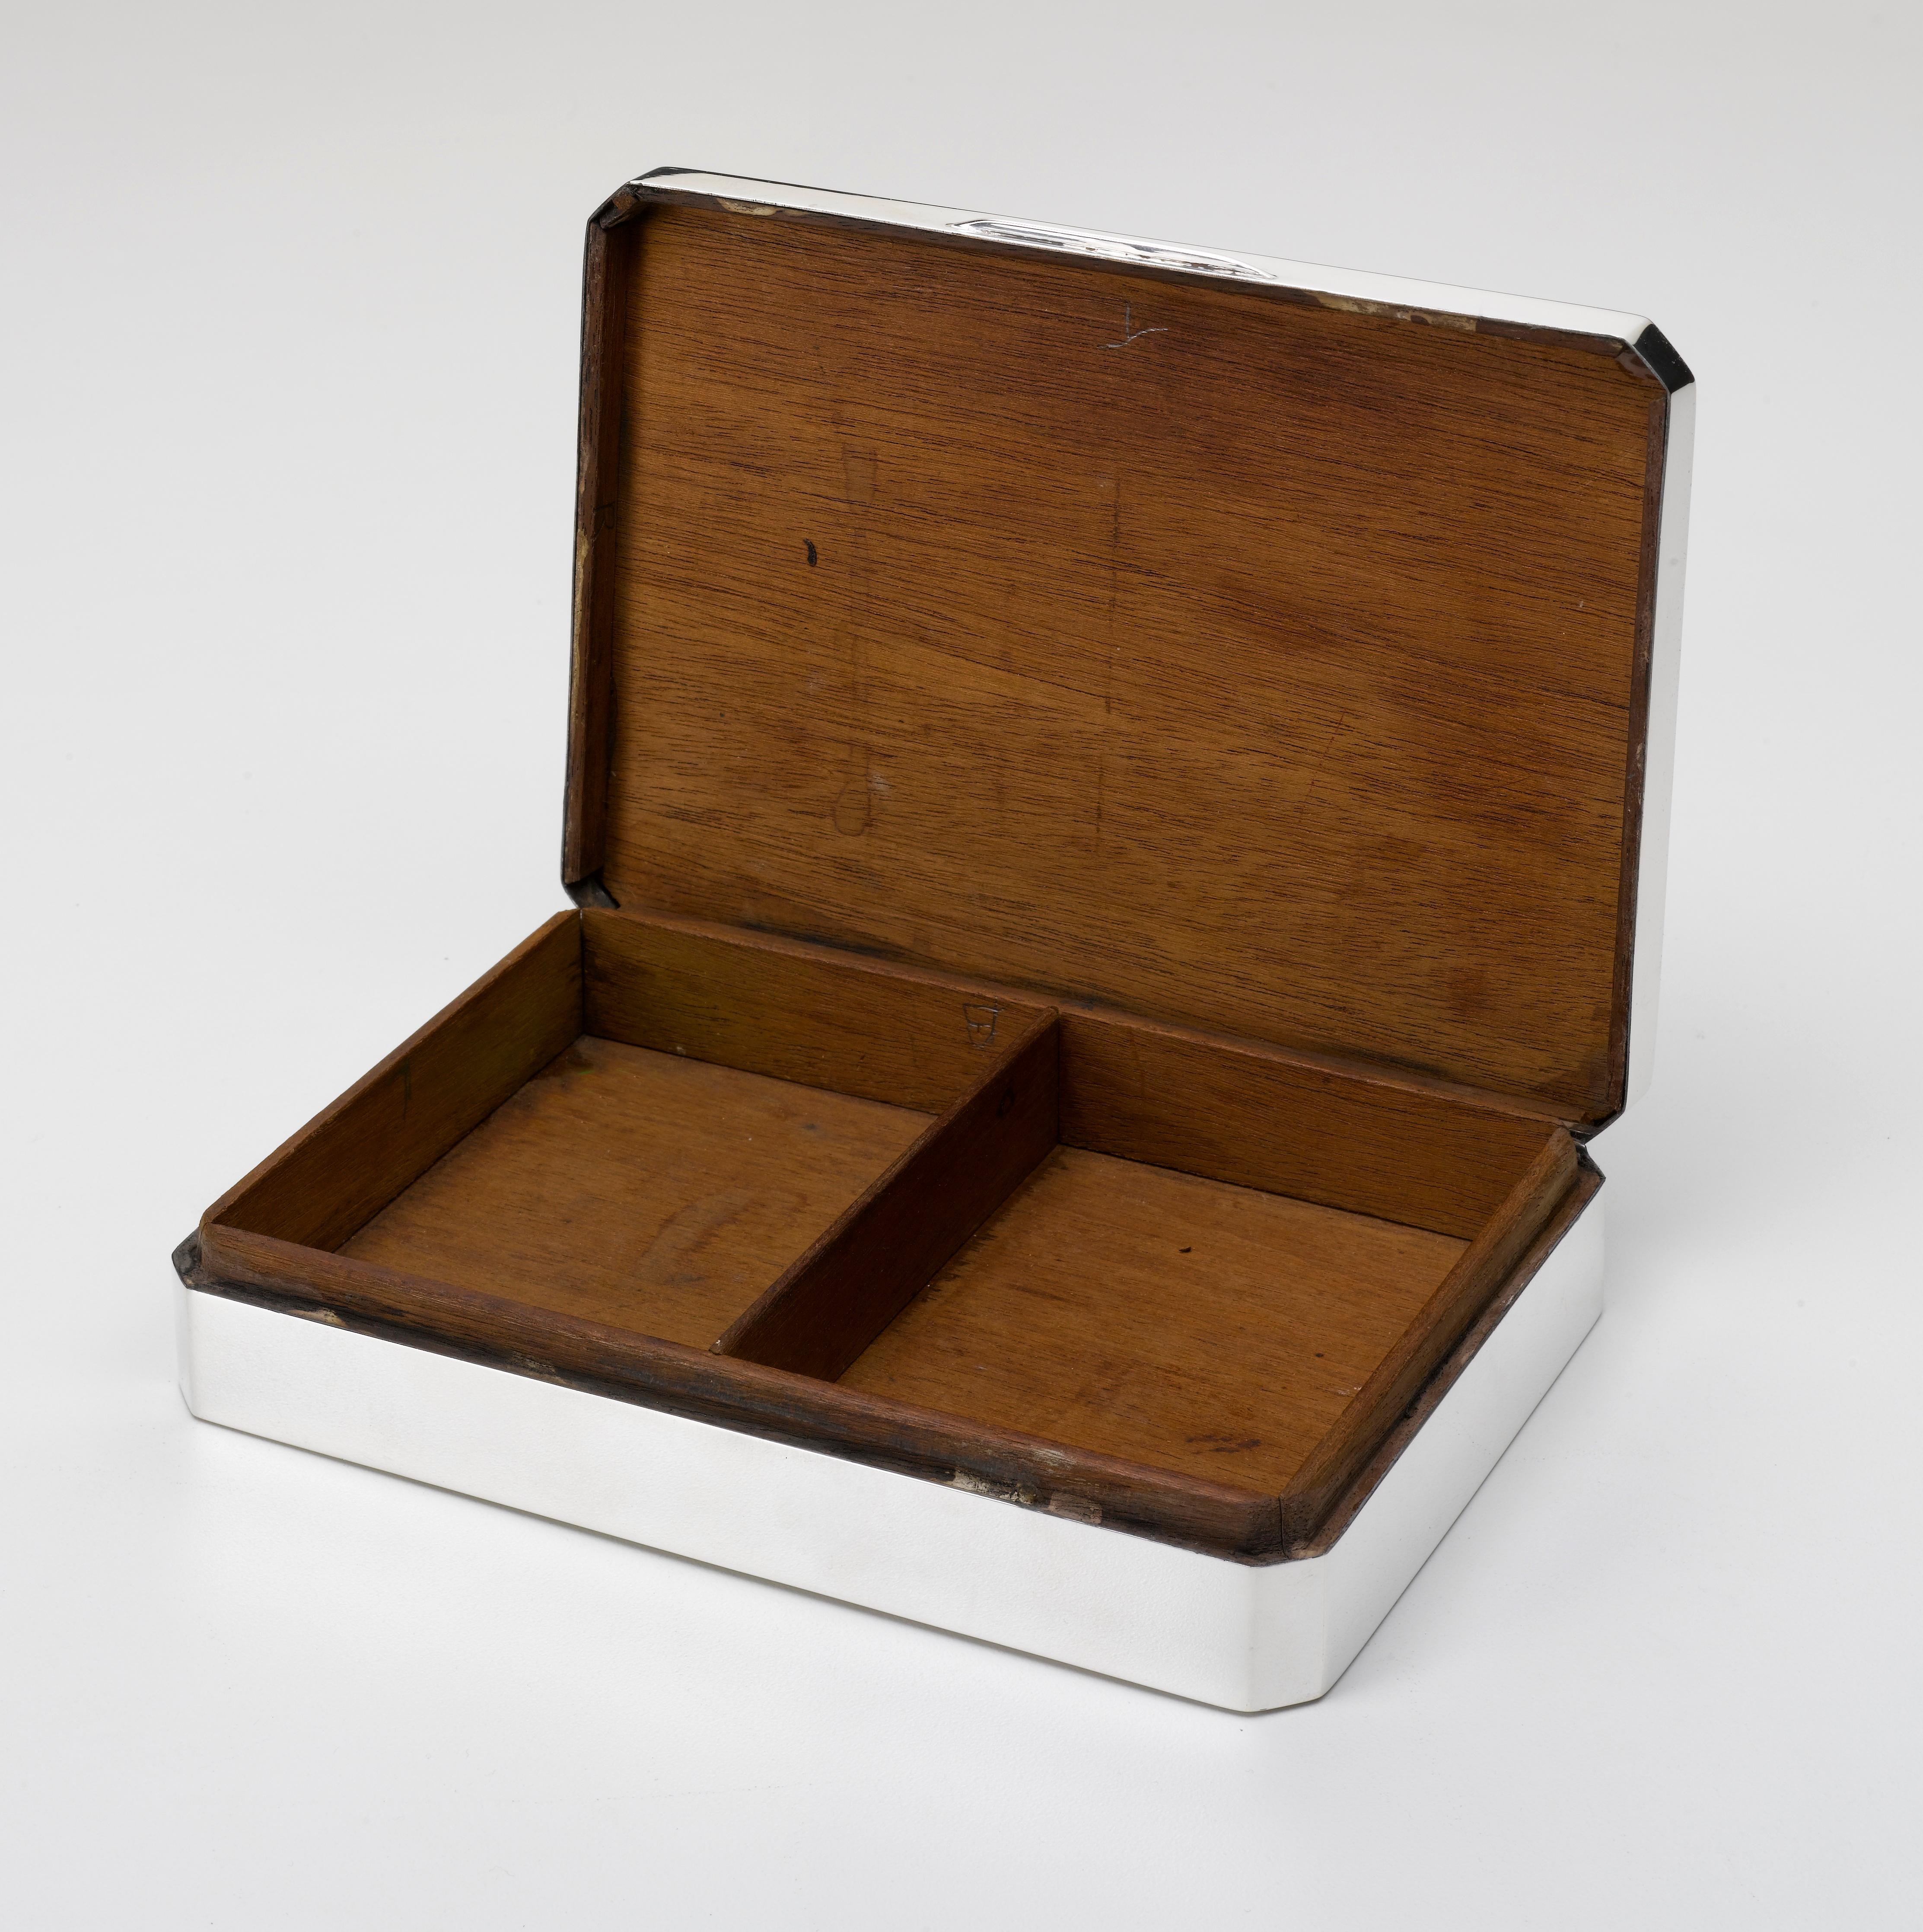 Nous vous proposons une superbe boîte à souvenirs en métal argenté datant de 1900, avec le poinçon associé. Cette petite boîte comprend un intérieur en bois avec deux fentes et un carré vide sur le dessus où des initiales auraient pu être gravées.